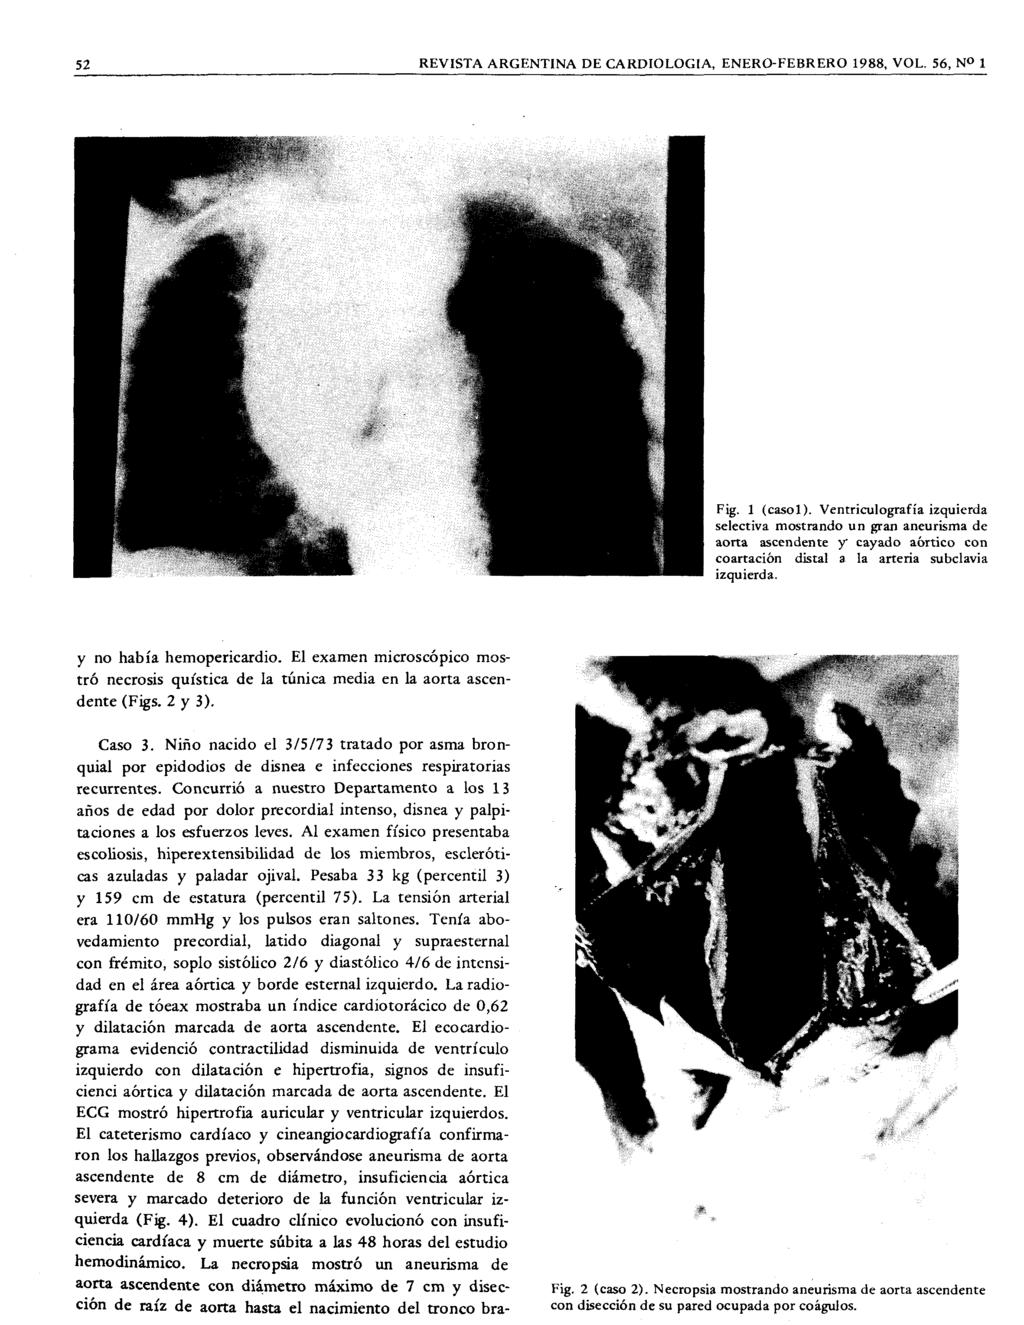 52 REVISTA ARGENTINA DE CARDIOLOGIA, ENERO-FEBRERO 1988, VOL 56, NO 1 Fig 1 (csol) VentricuIogrfí izquierd selectiv mostrndo un grn neurism de ort scendente Y' cydo órtico con cortción distl l rteri